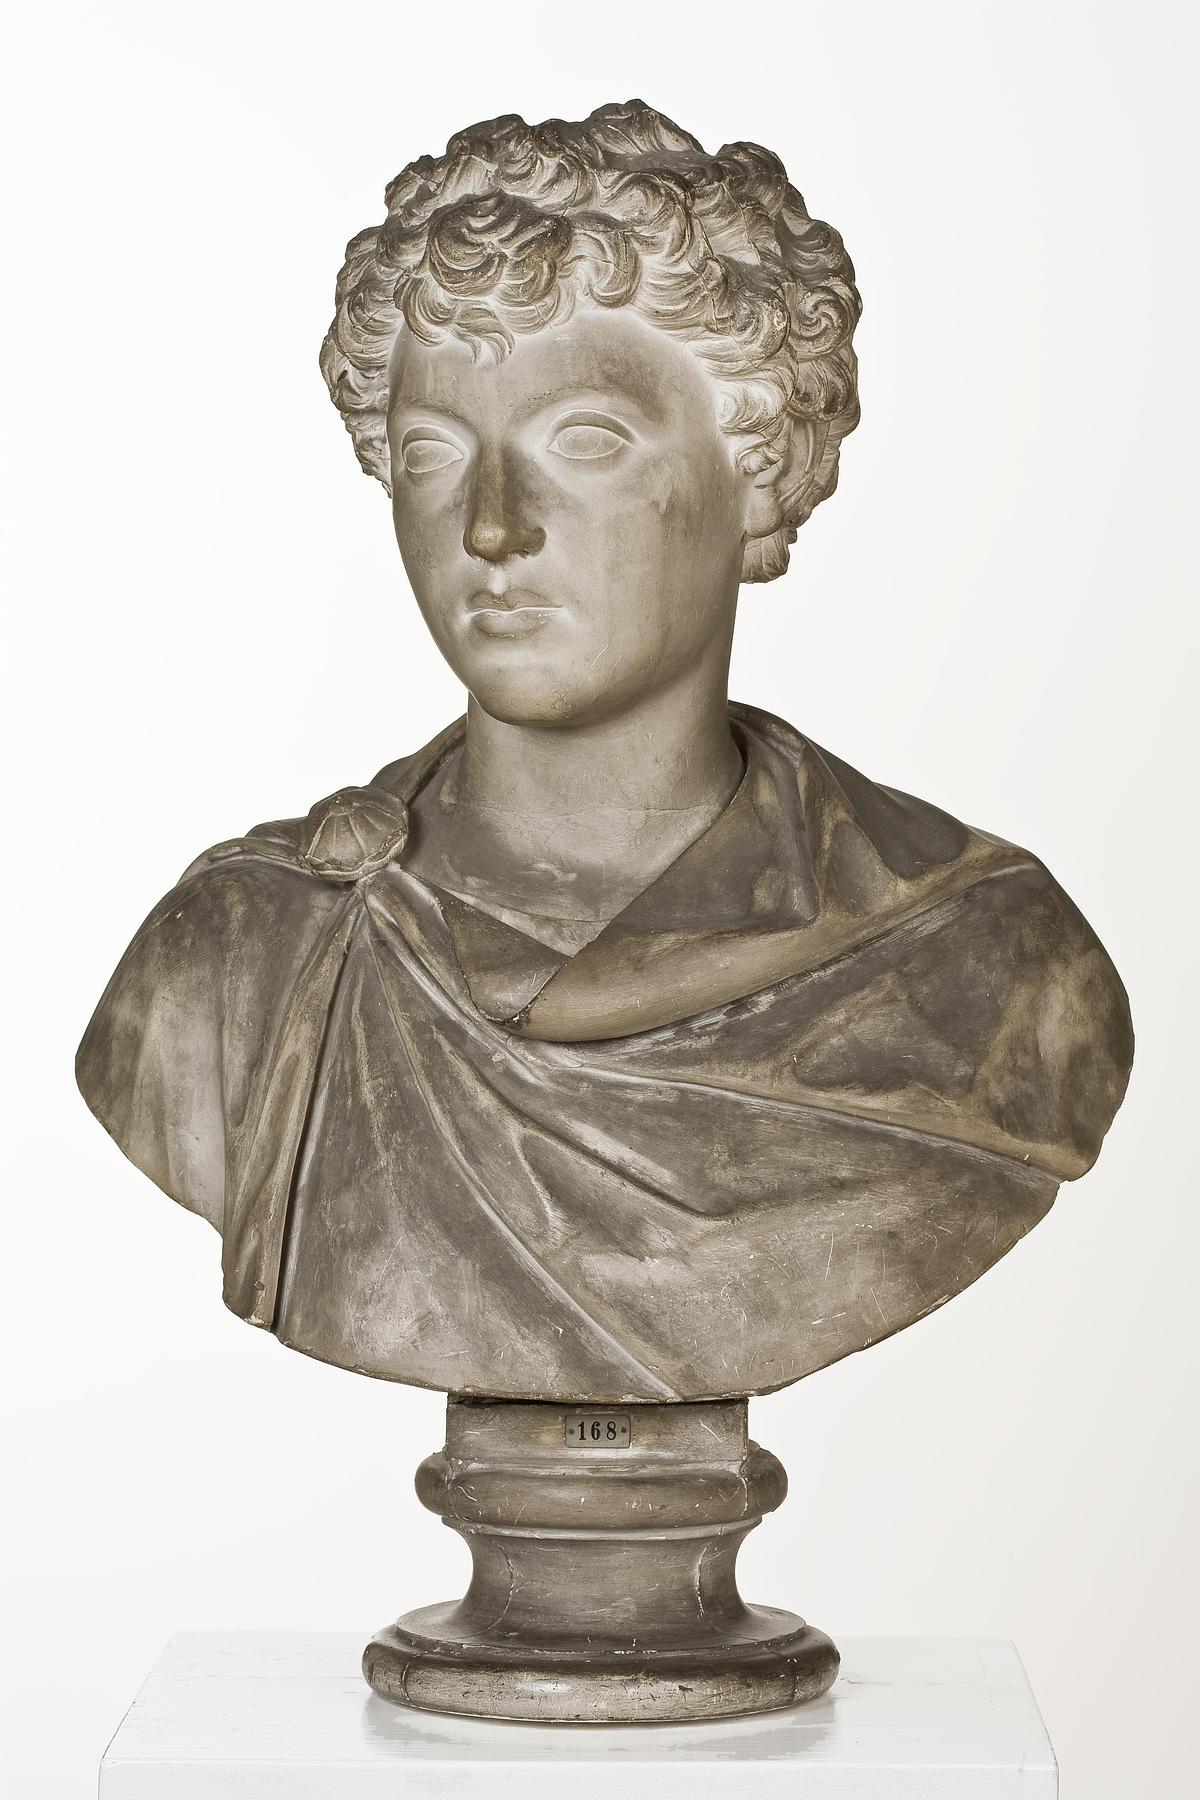 Marcus Aurelius, L168